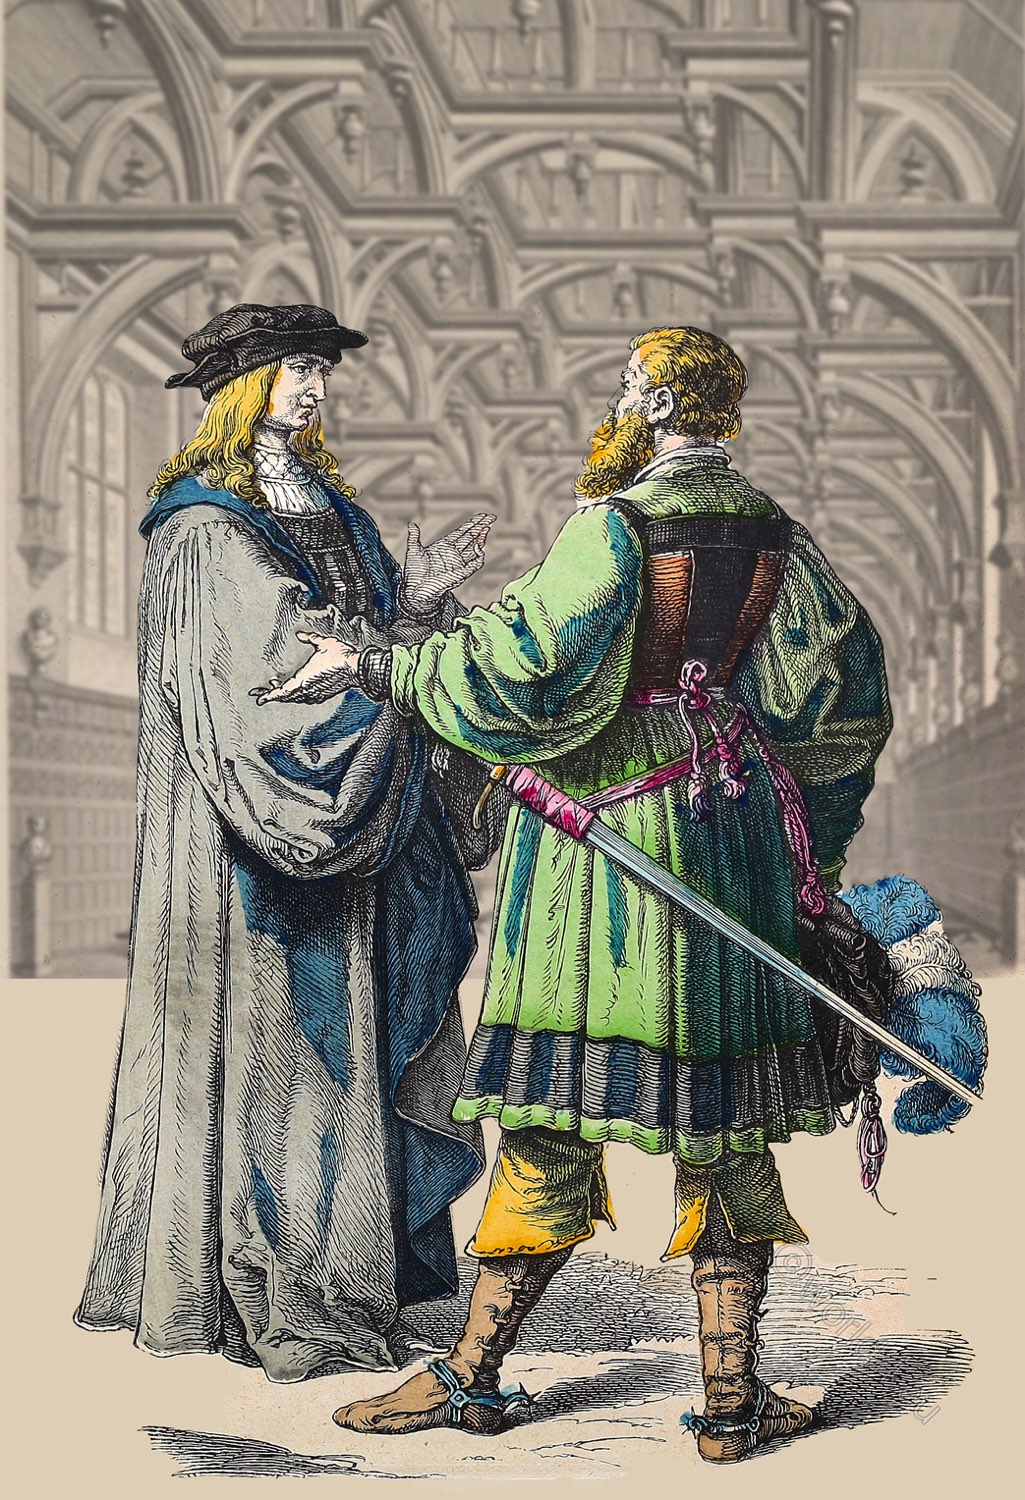 German, Magistrate, Knight, costumes, Renaissance, Münchener, Bilderbogen,